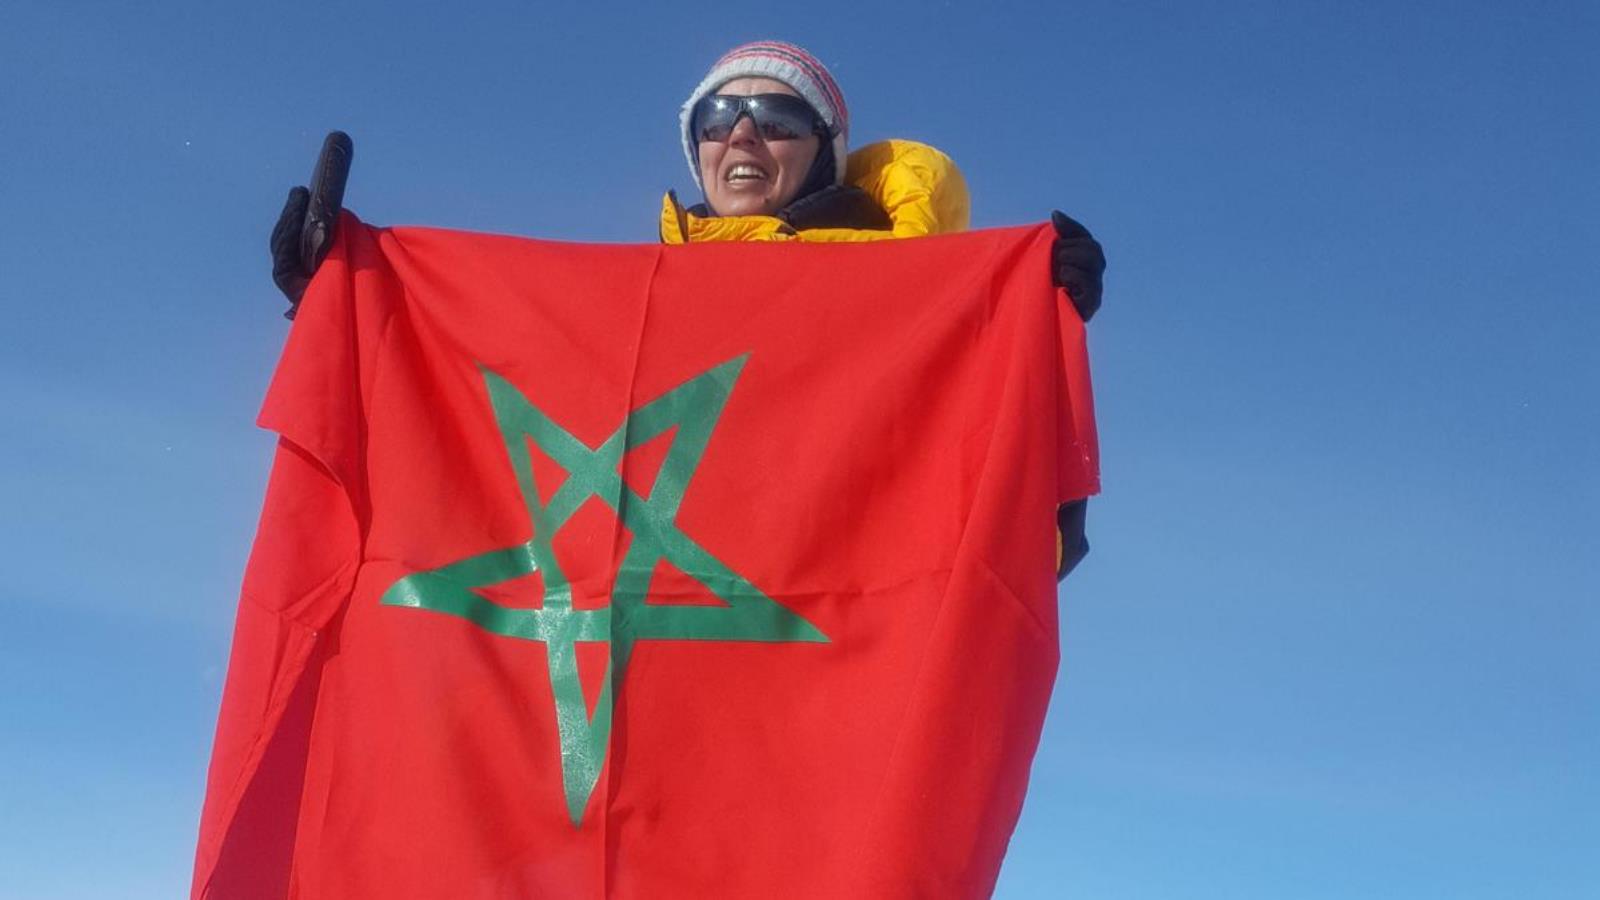 ‪المغربية بشرى بيبانو ترفع علم المغرب فوق قمة جبل فينوس في القطب الجنوب‬ (الجزيرة)